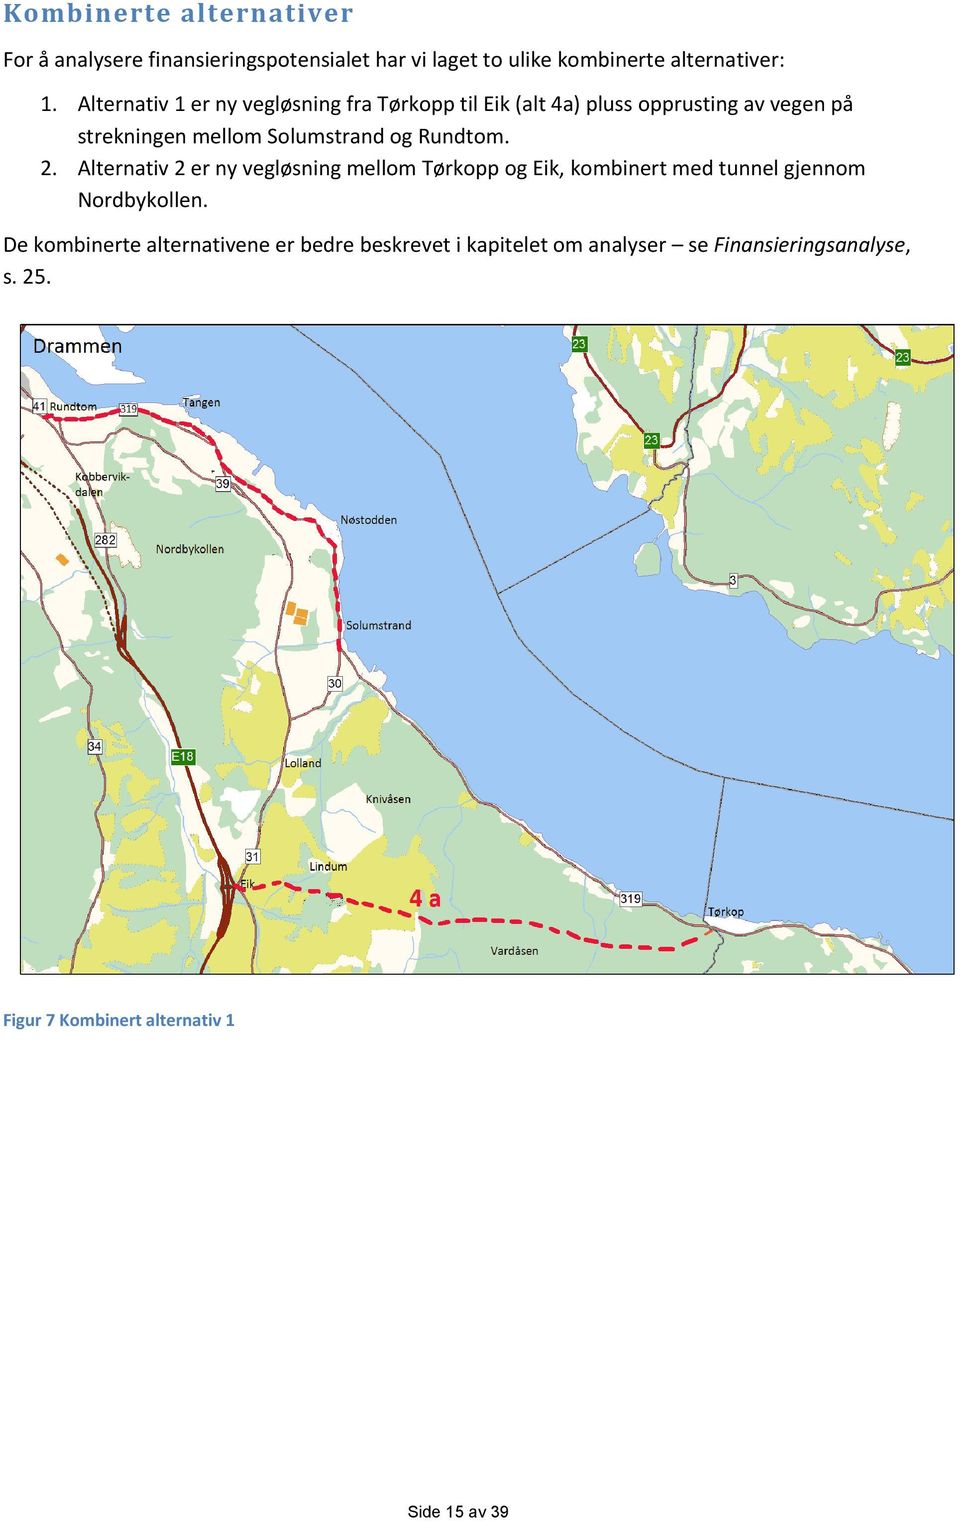 Rundtom. 2. Alternativ 2 er ny vegløsning mellom Tørkopp og Eik, kombinert med tunnel gjennom Nordbykollen.